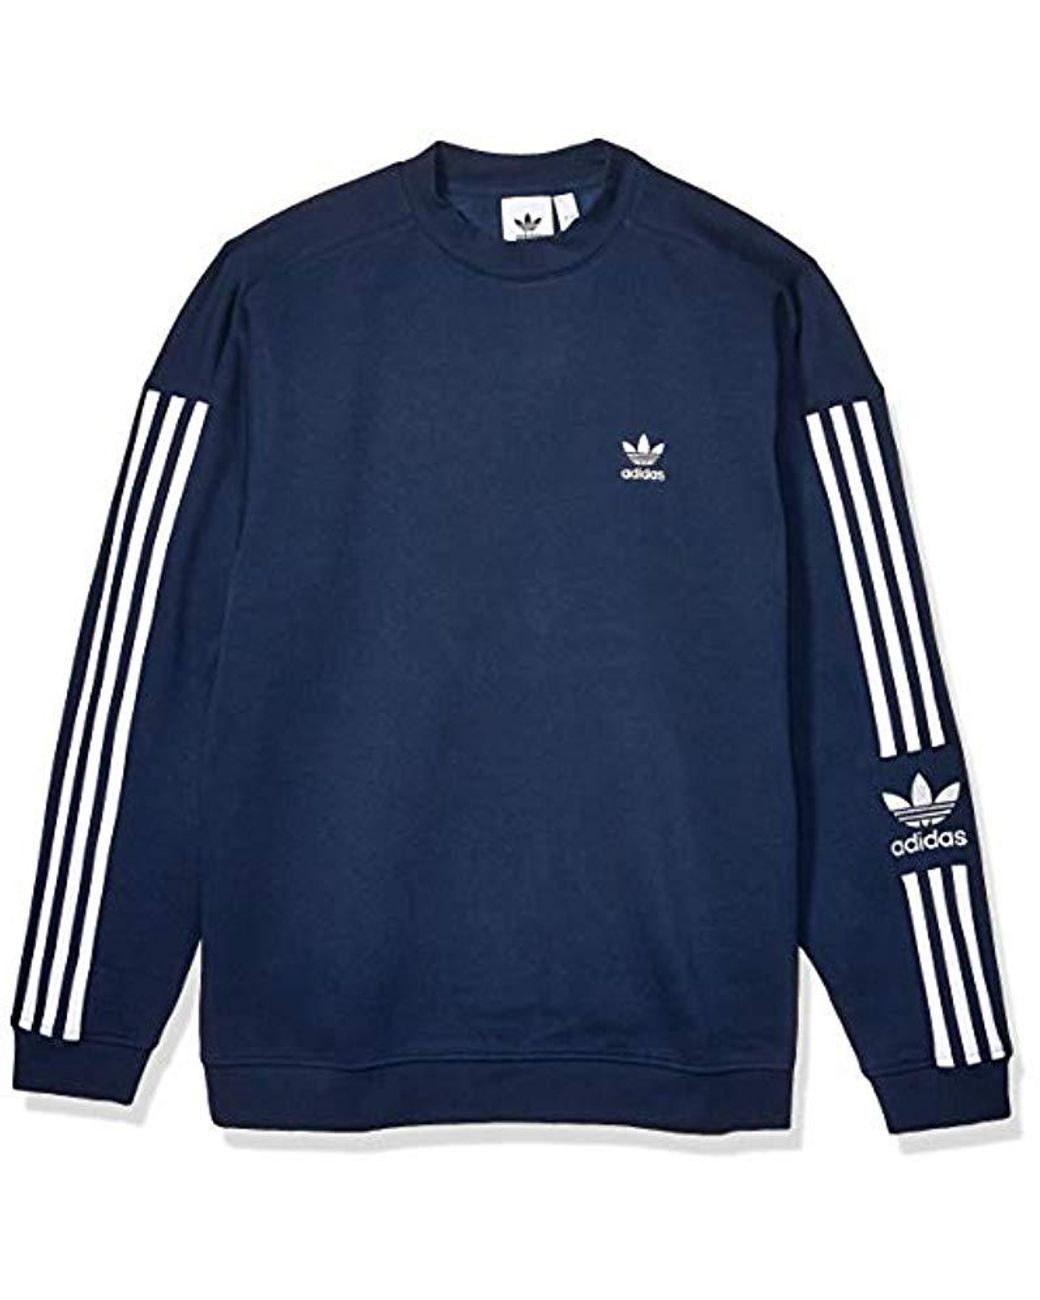 adidas Originals Fleece Lock Up Crew Sweatshirt in Navy (Blue) for Men ...